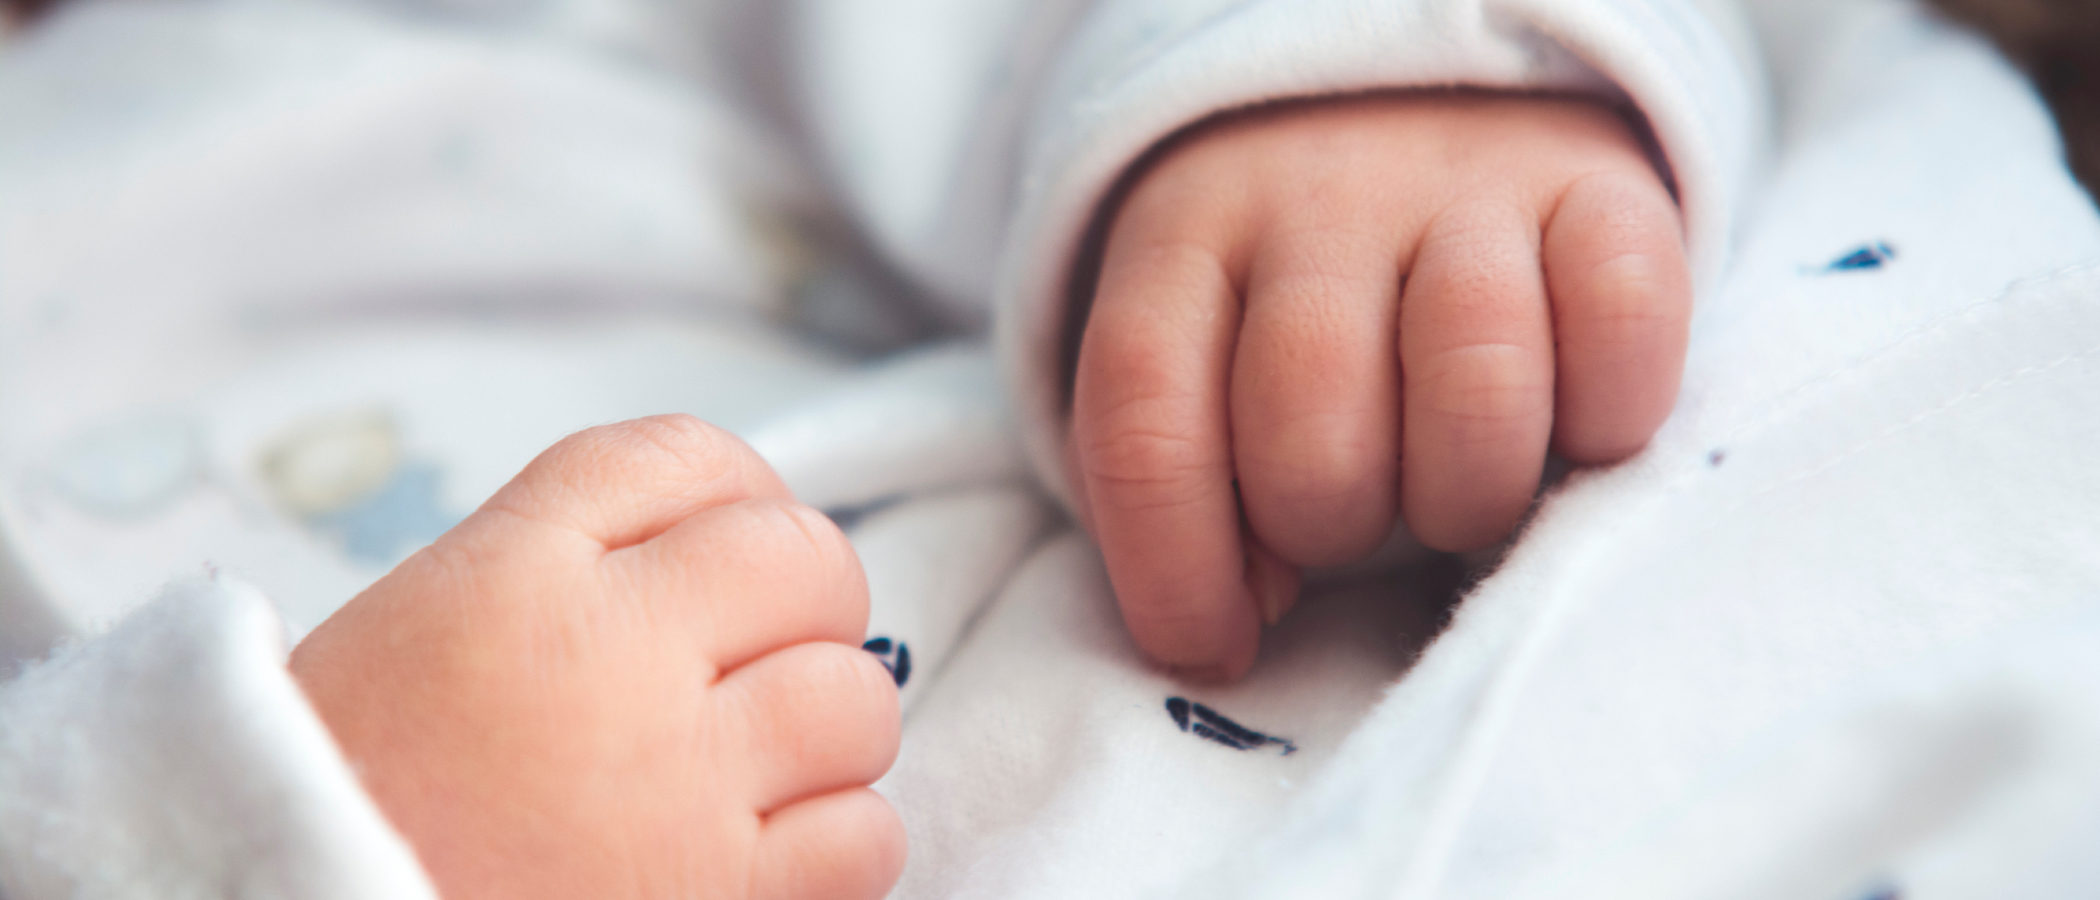 El síndrome de aspiración meconial en el bebé recién nacido